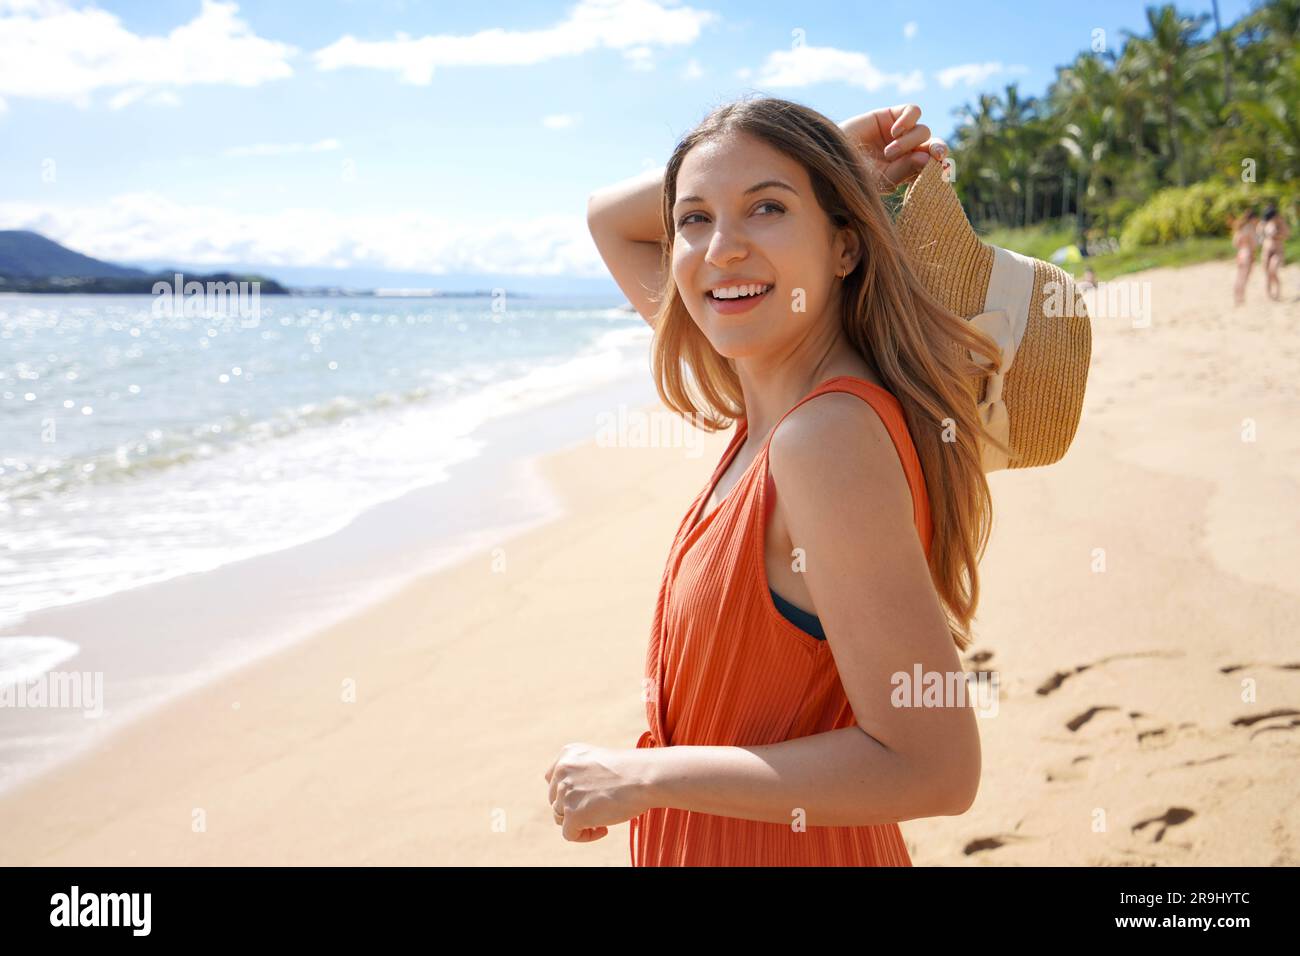 Ritratto di una bella ragazza spensierata che regge un cappello di paglia sulla spiaggia tropicale che guarda lontano Foto Stock